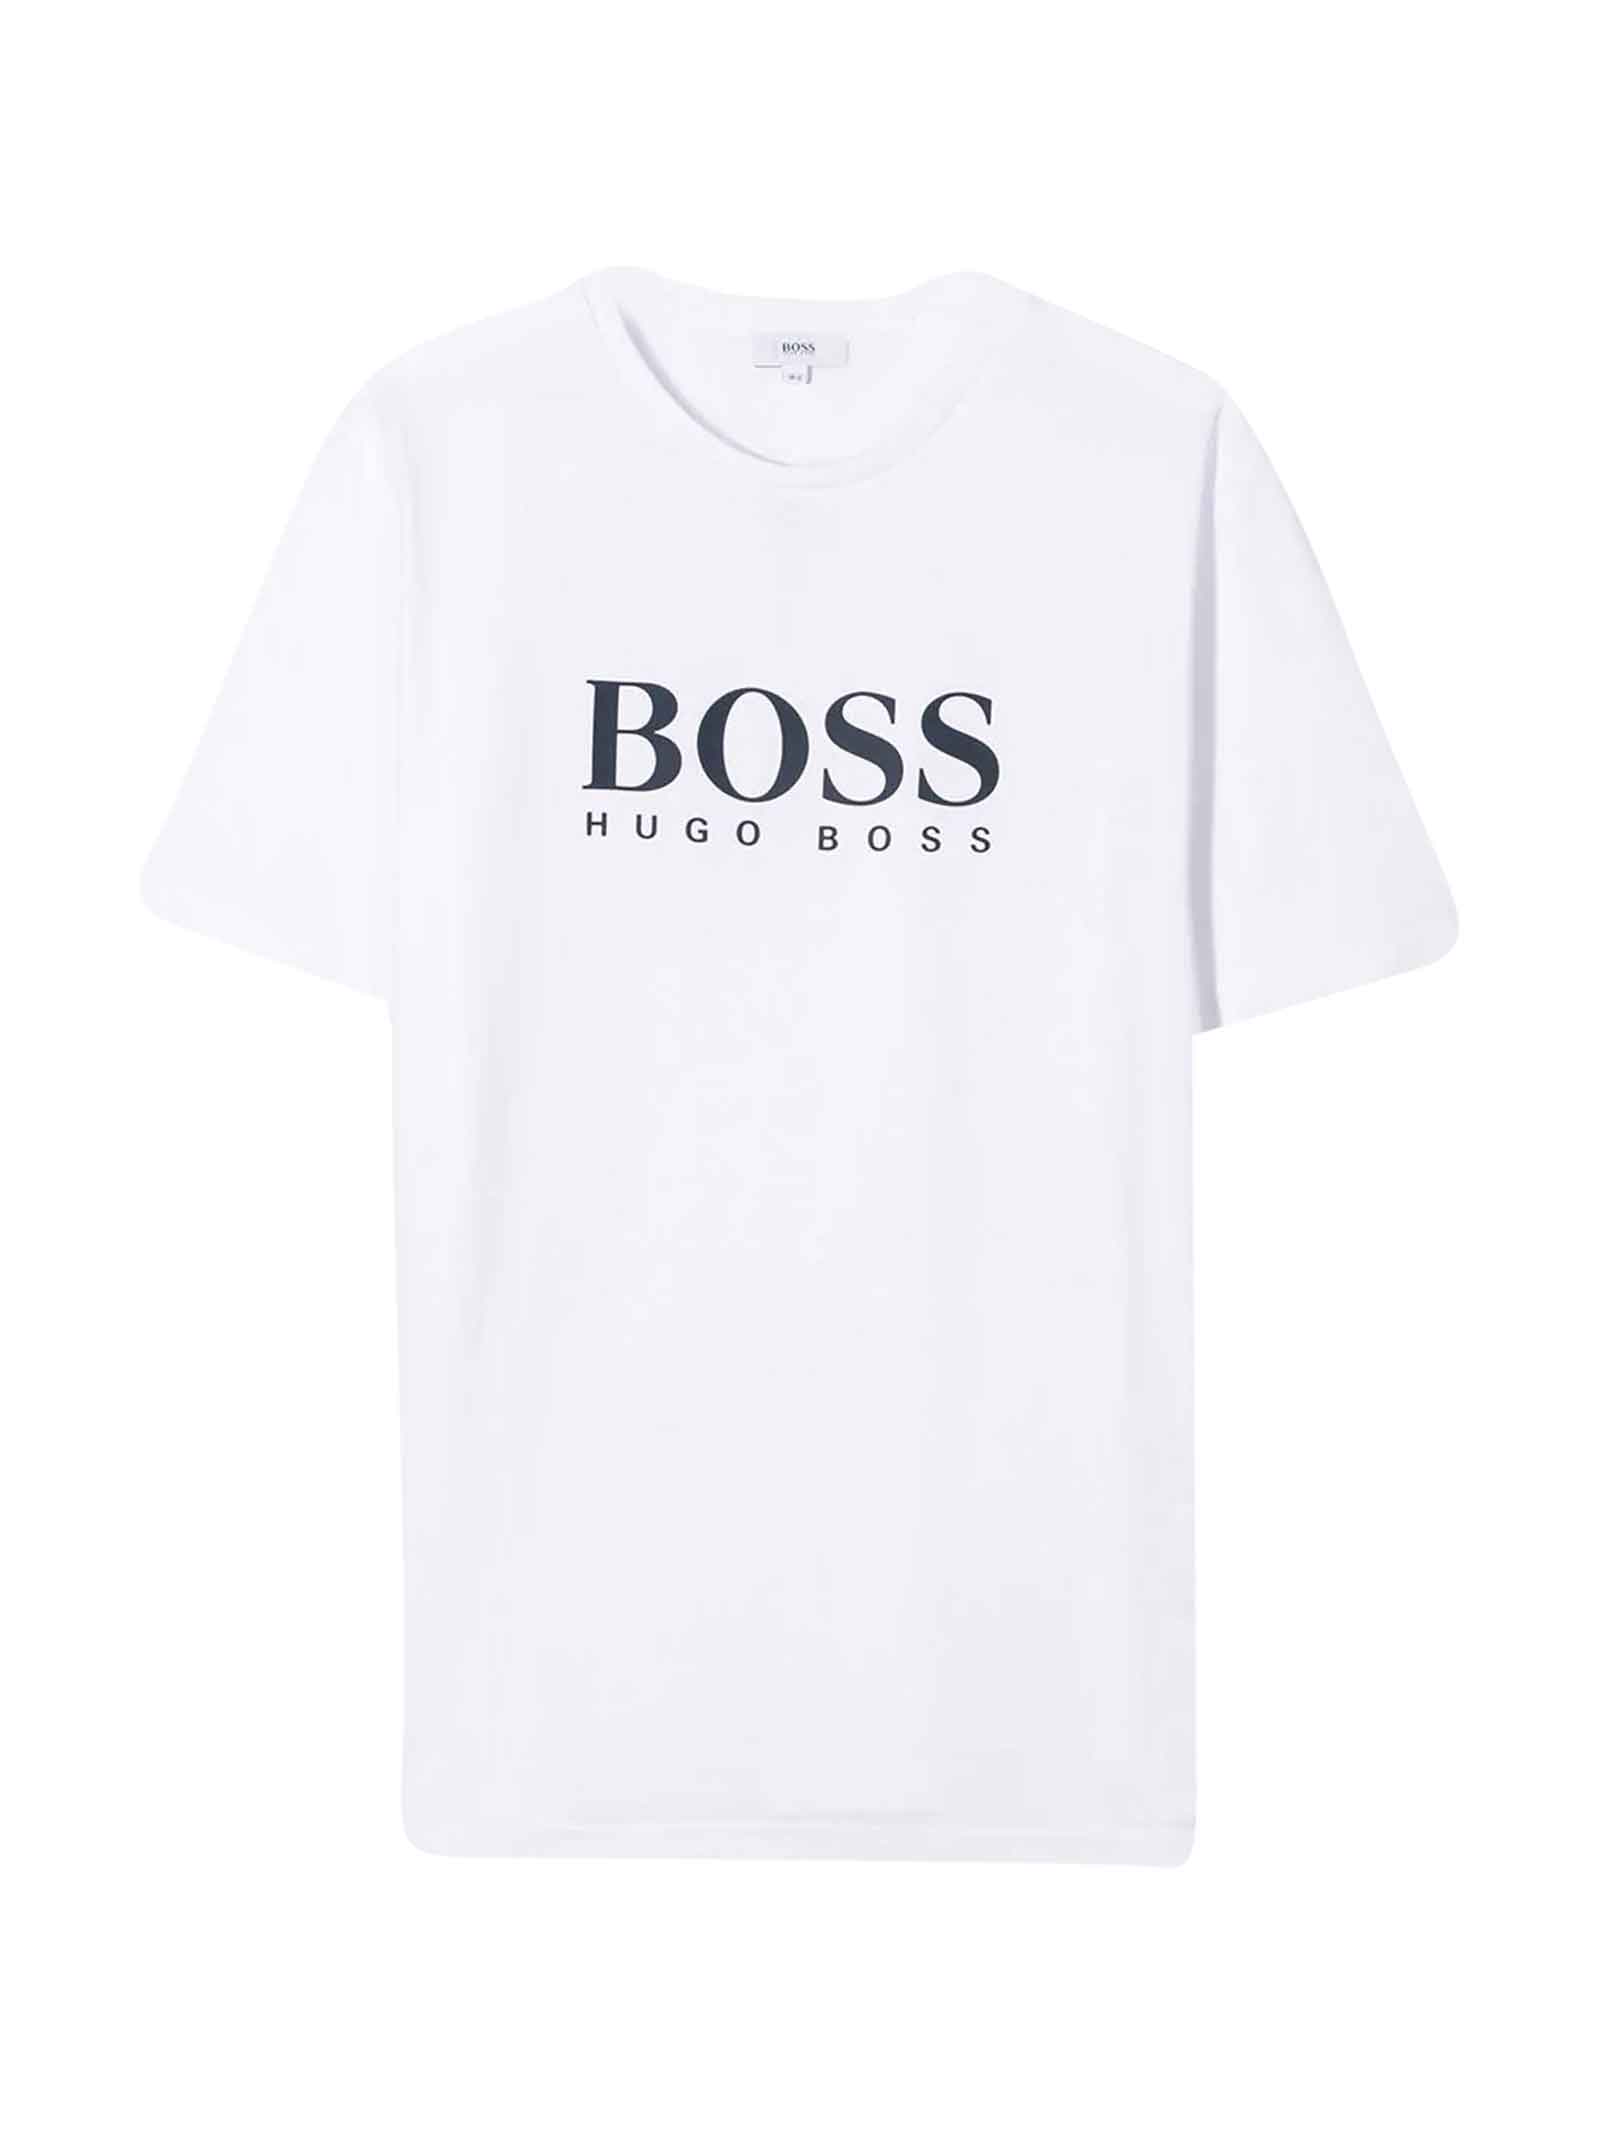 hugo boss menswear sale 